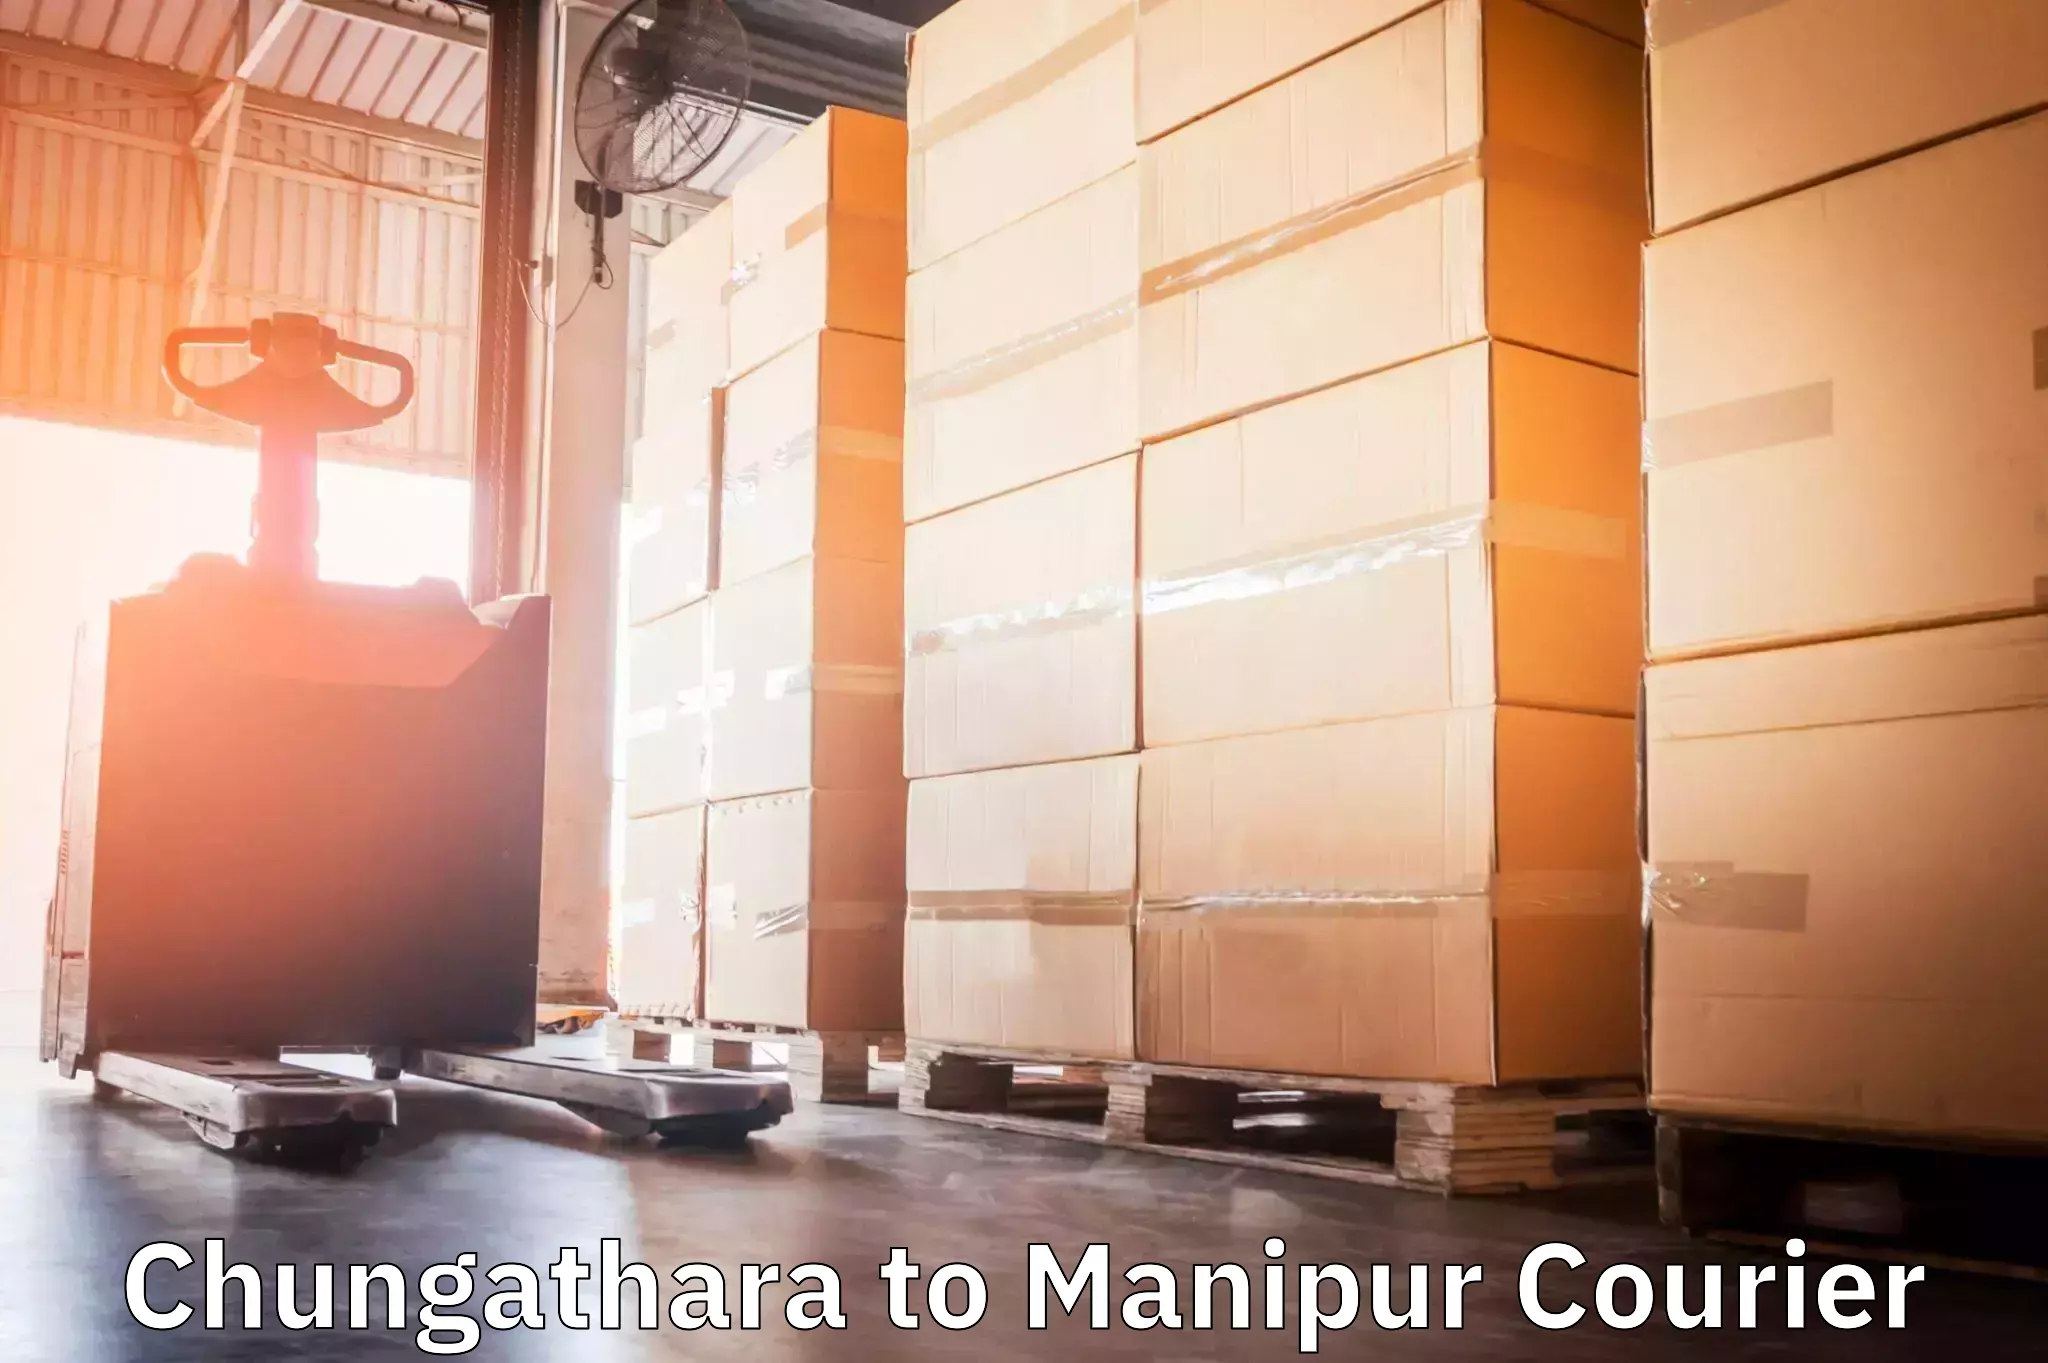 Logistics service provider Chungathara to Moirang